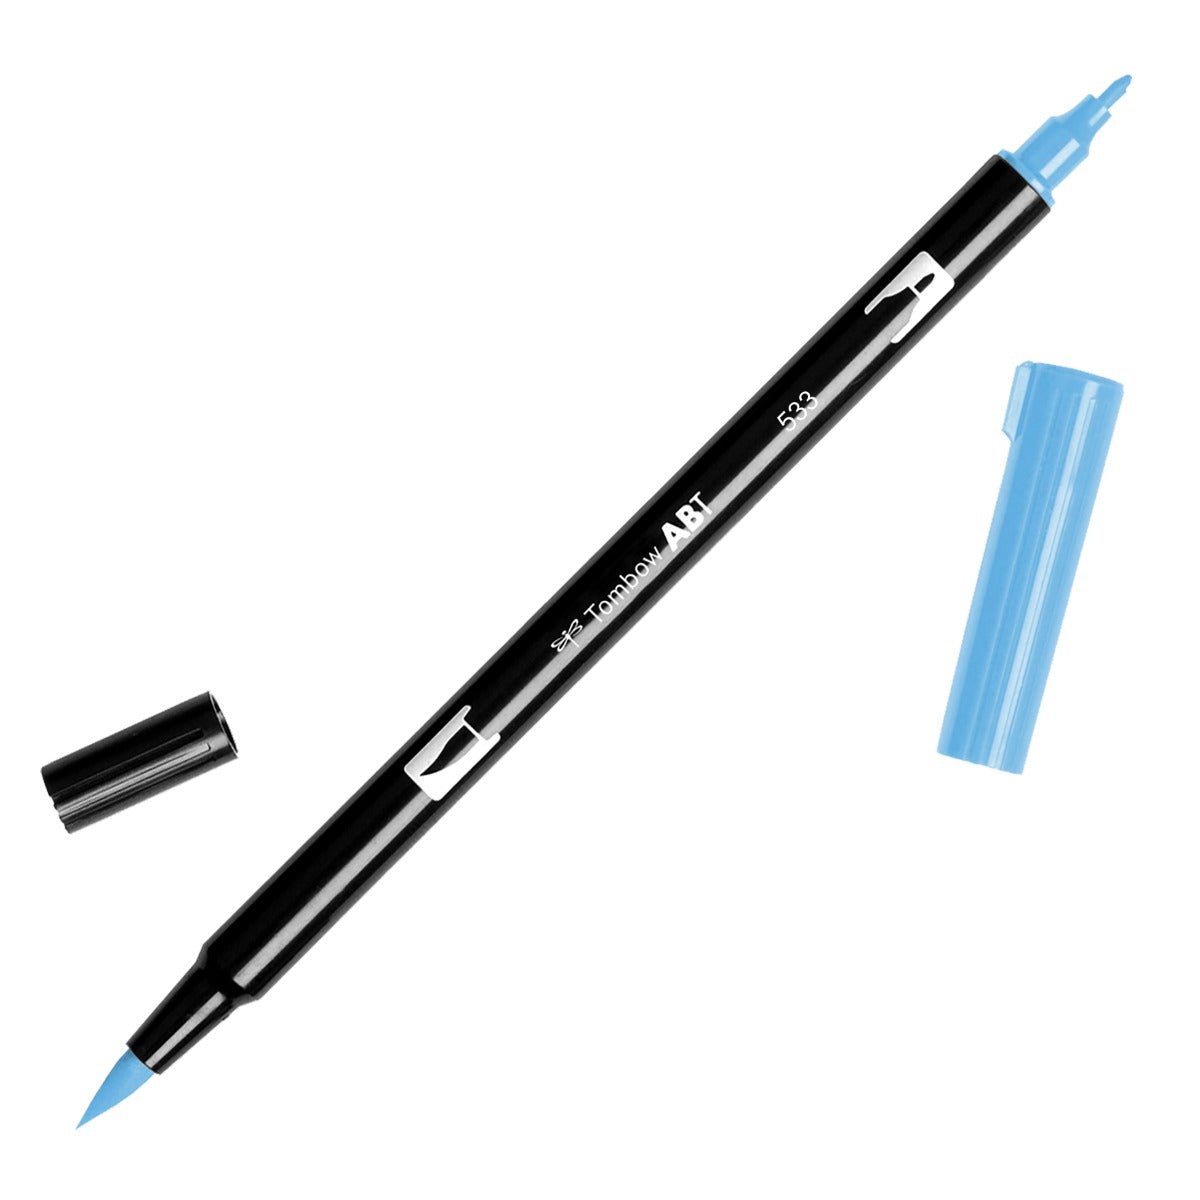 Tombow Dual Brush Pen 533 Peacock Blue - theartshop.com.au